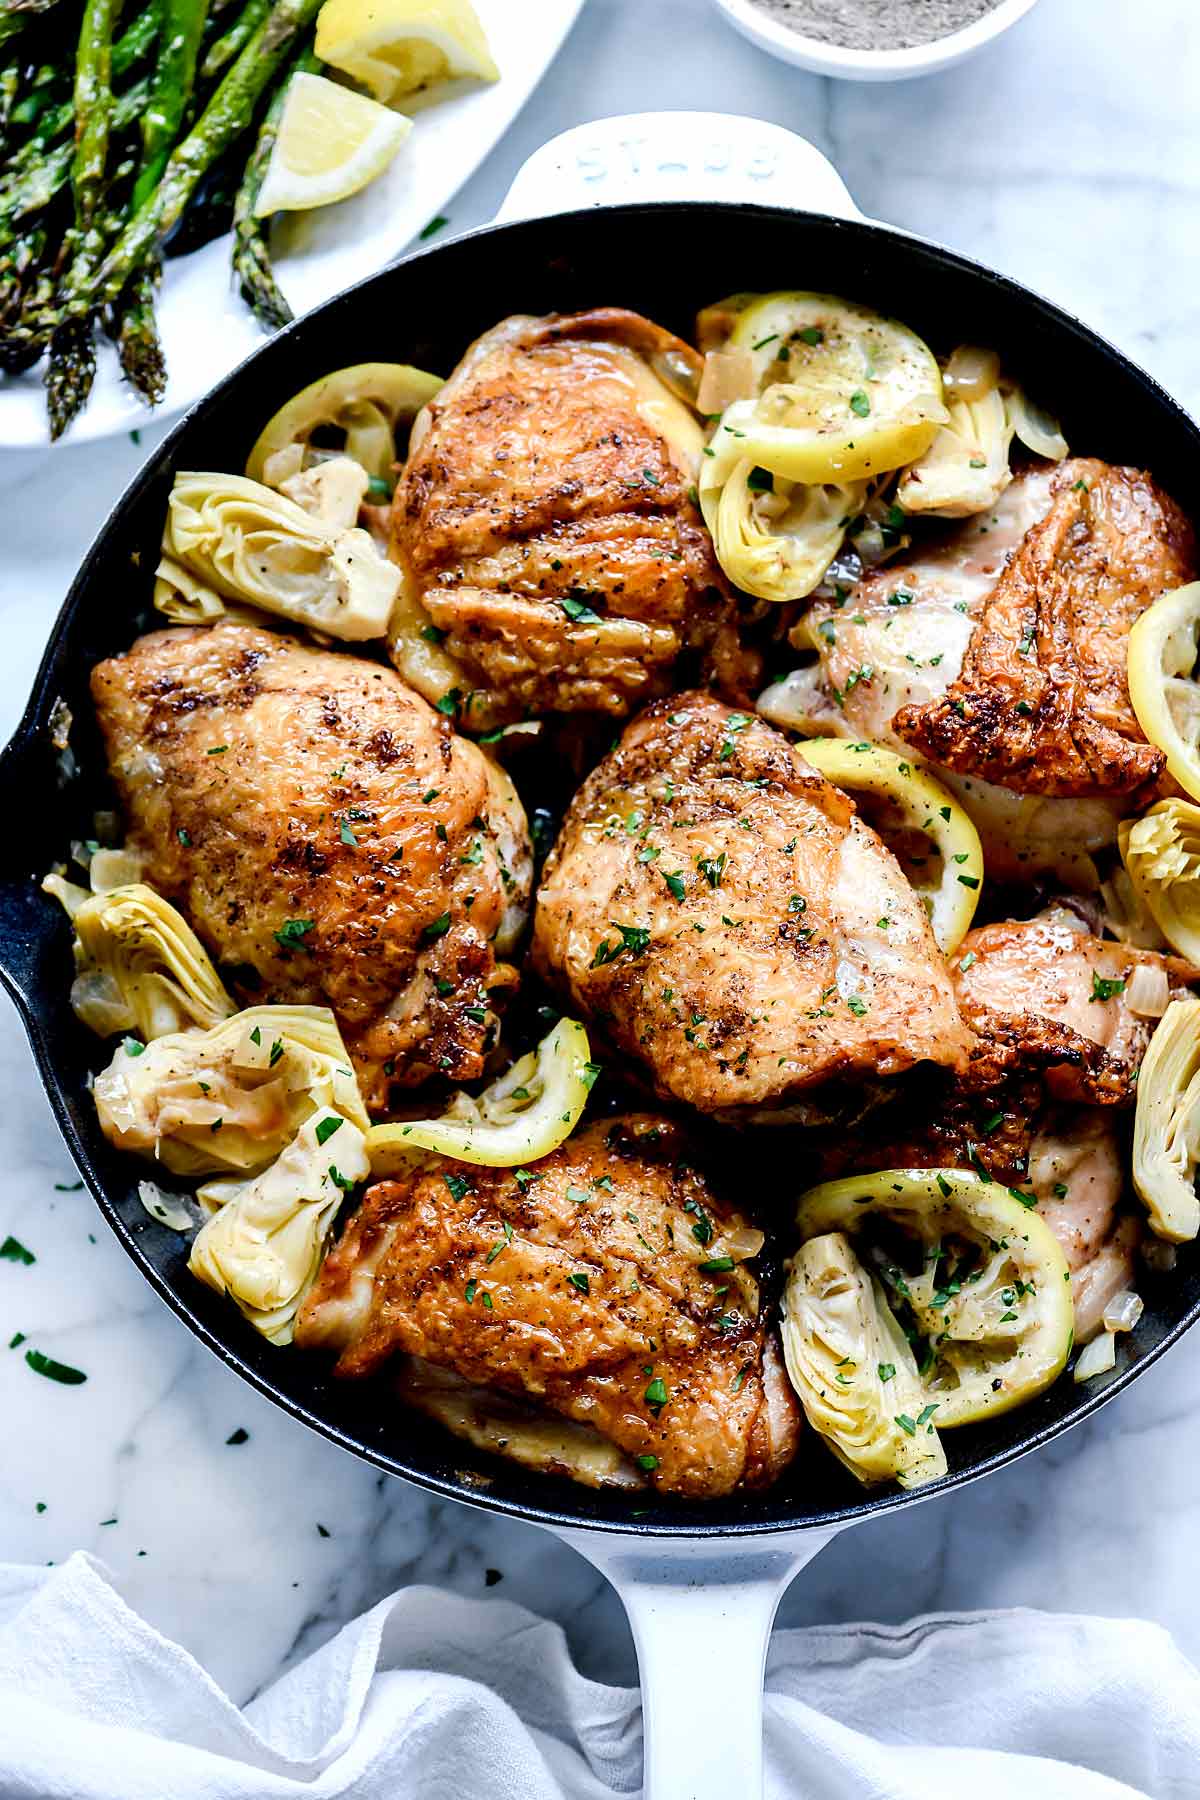 Cuisses de poulet au citron avec artichauts | foodiecrush.com #chicken #dinner #thighs #recipes #artichoke #healthy #easy #skillet